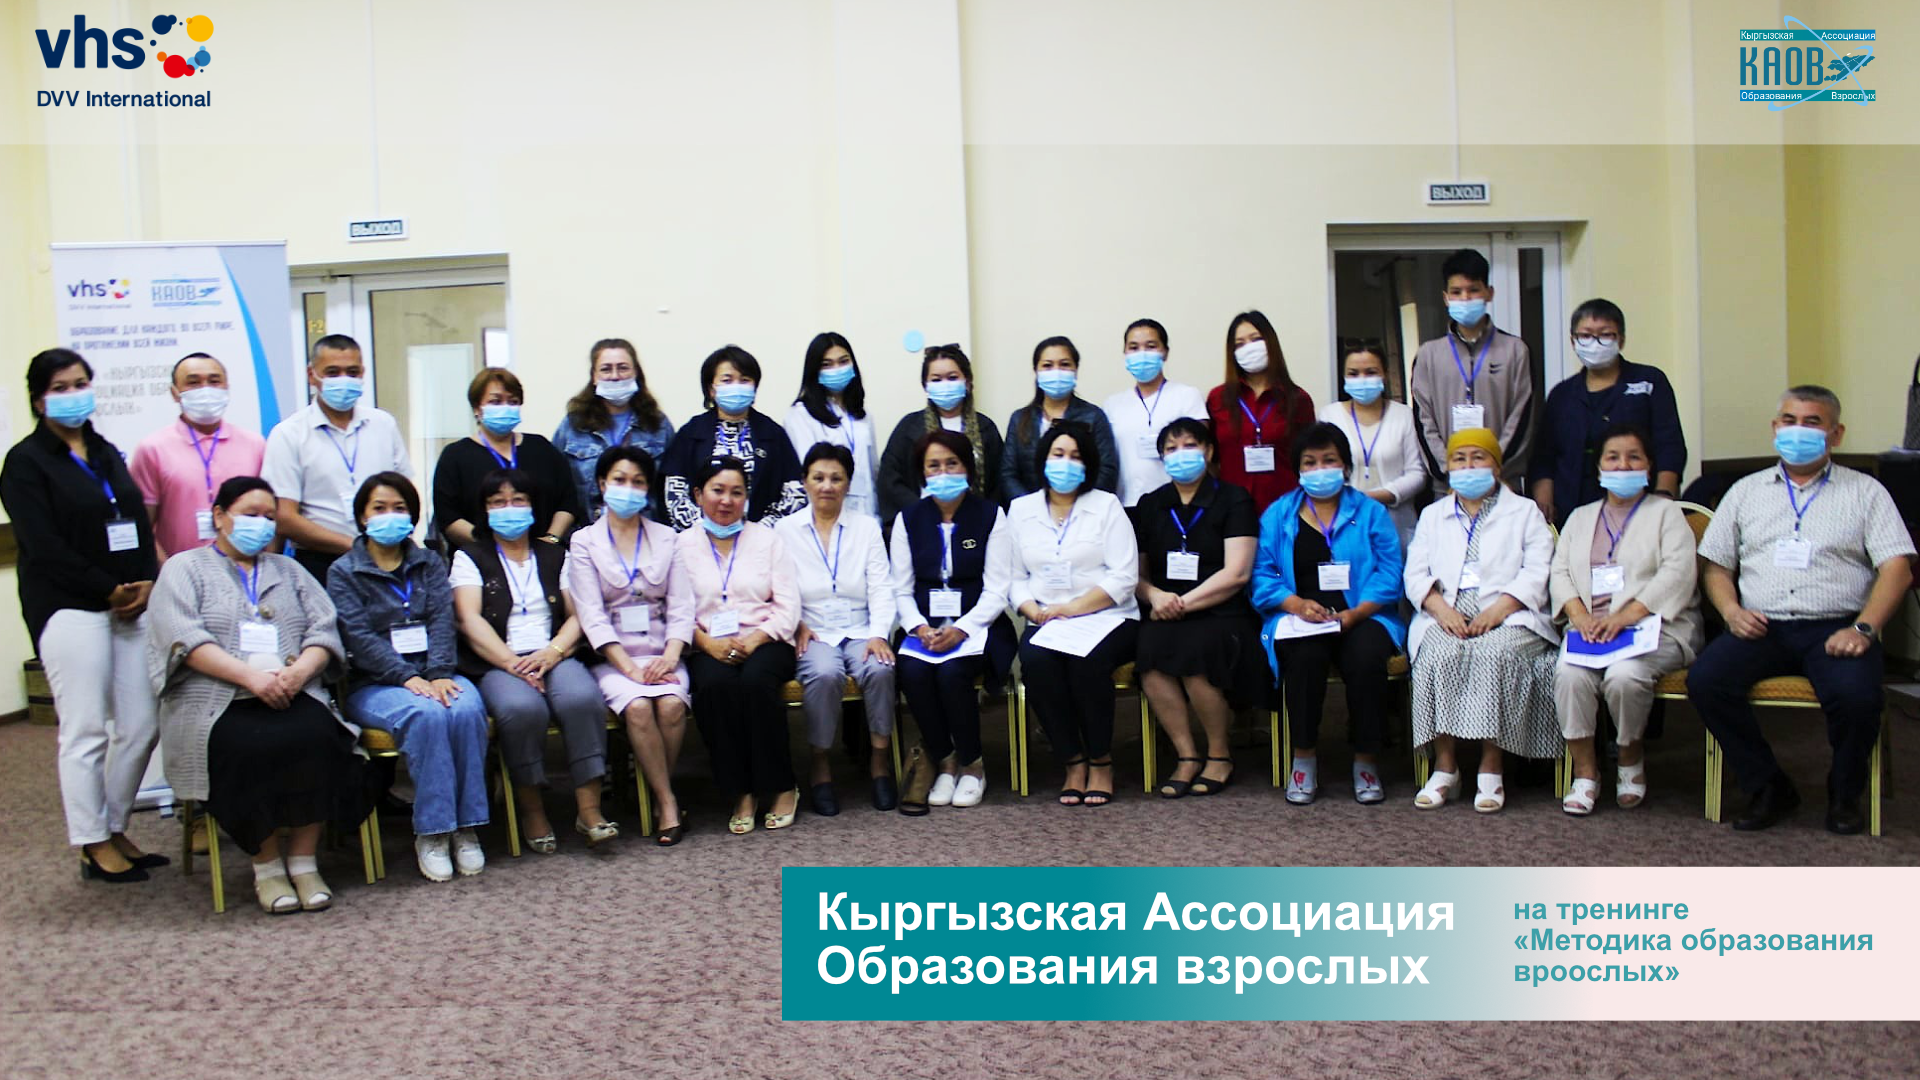 You are currently viewing Кыргызская Ассоциация Образования взрослых на тренинге методика образования взрослых